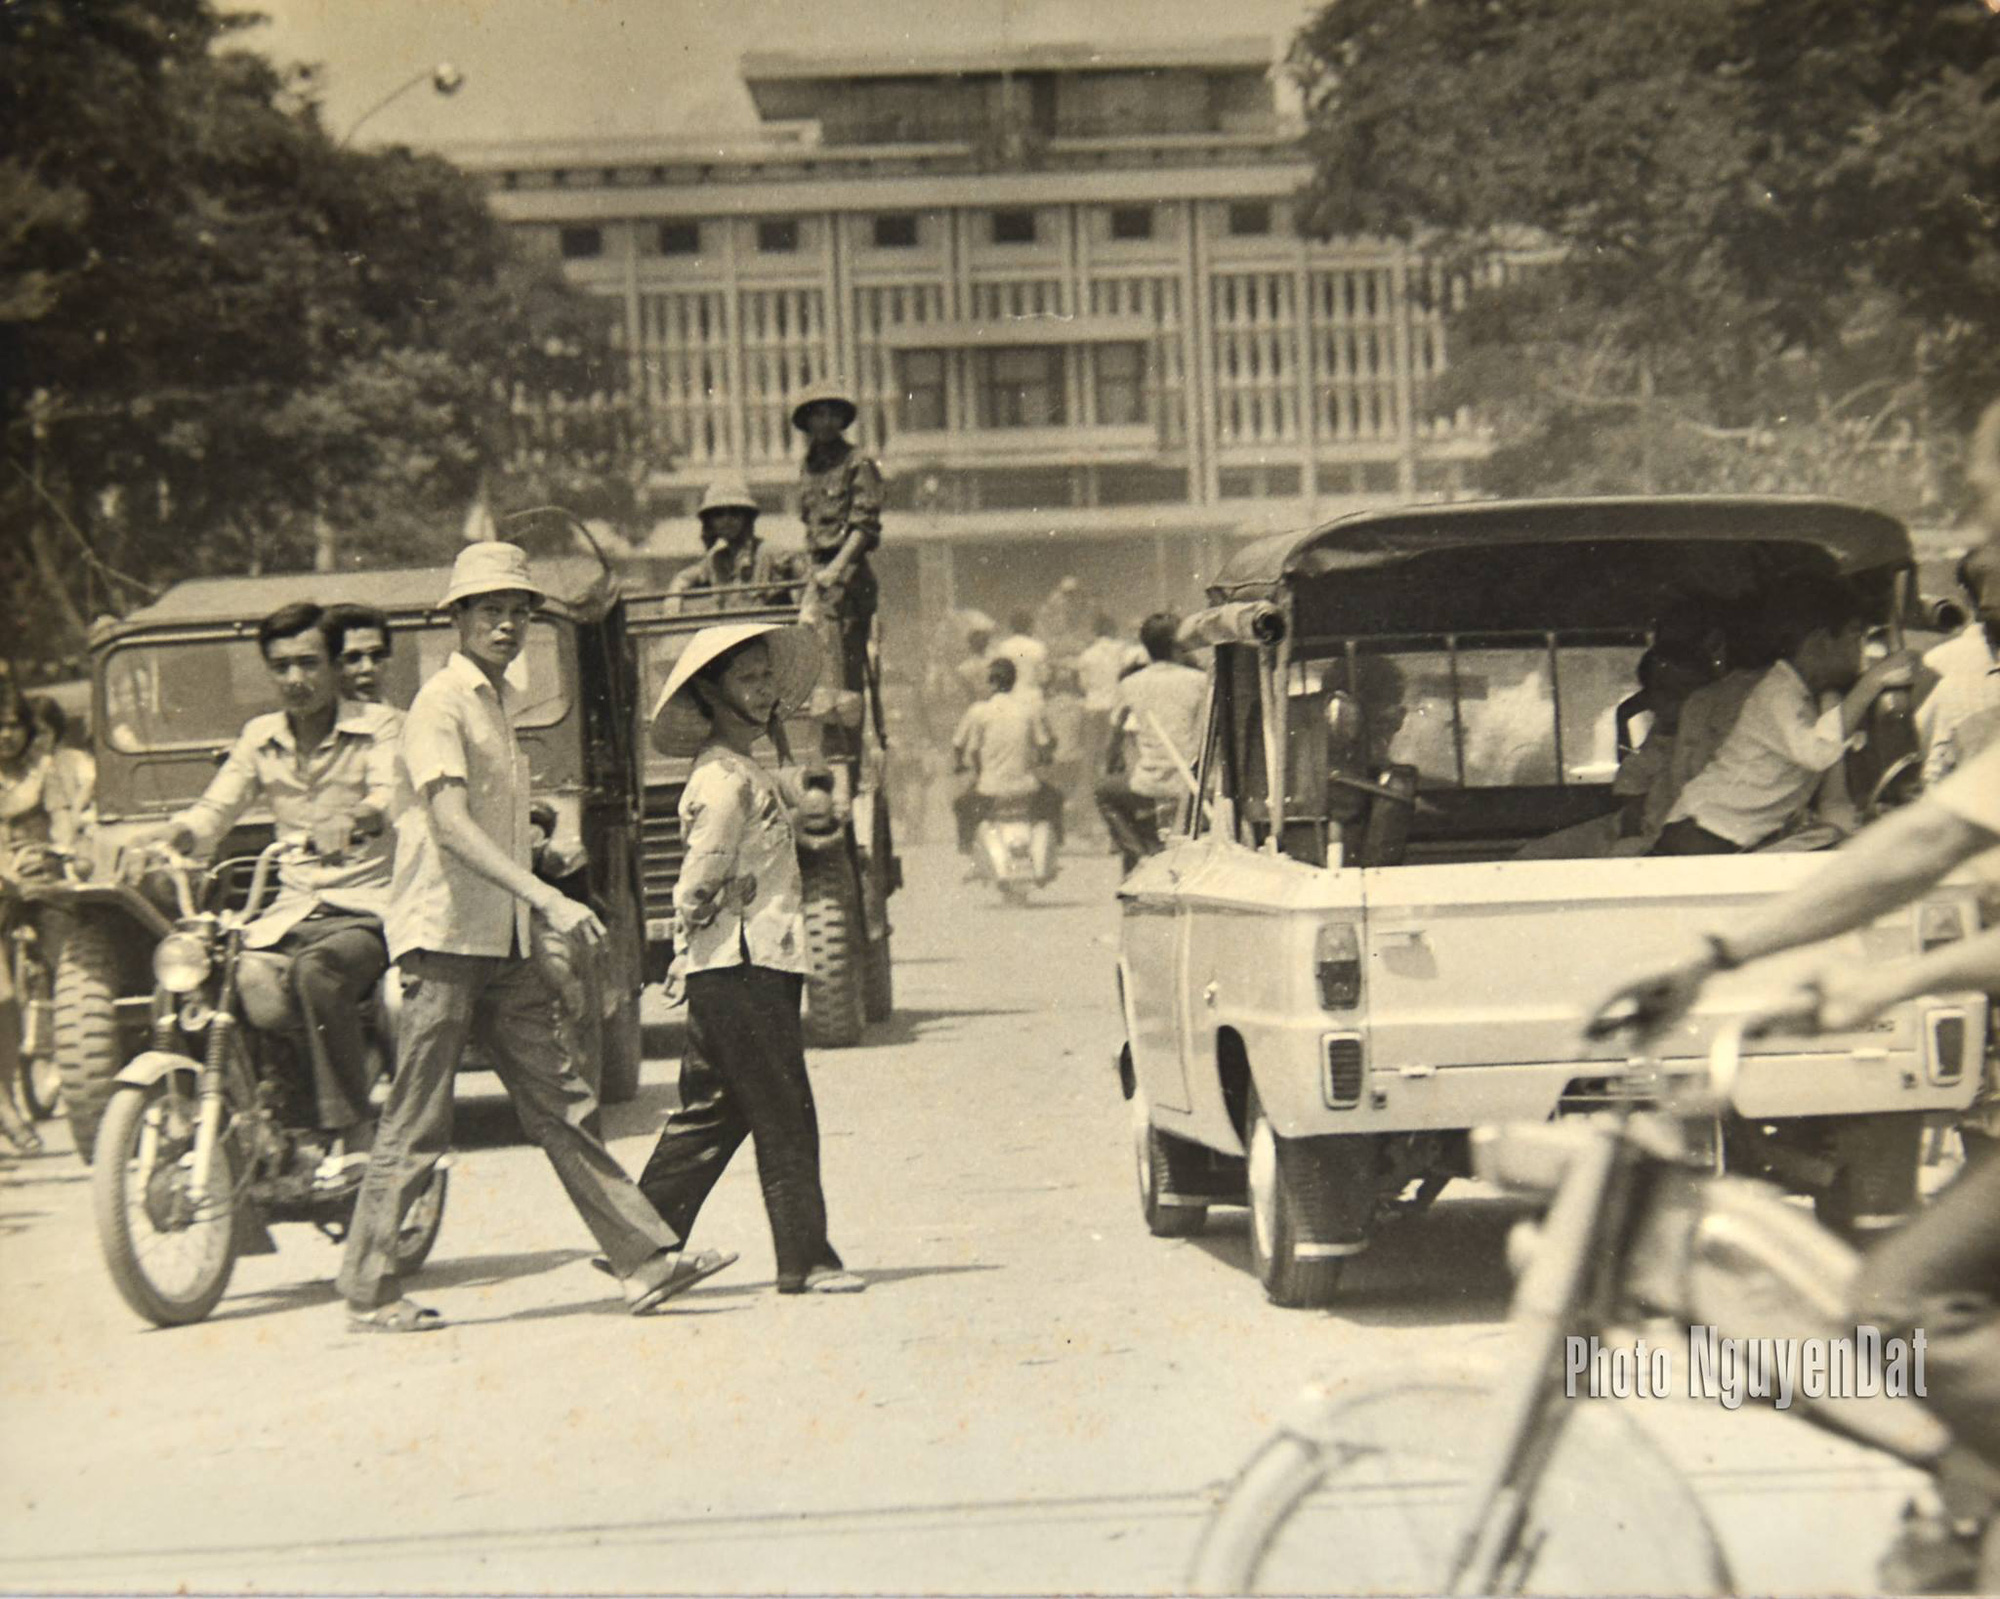 Người lưu giữ những khoảnh khắc lịch sử quý giá ngày 30/4 trên đường phố Sài Gòn - Ảnh 4.